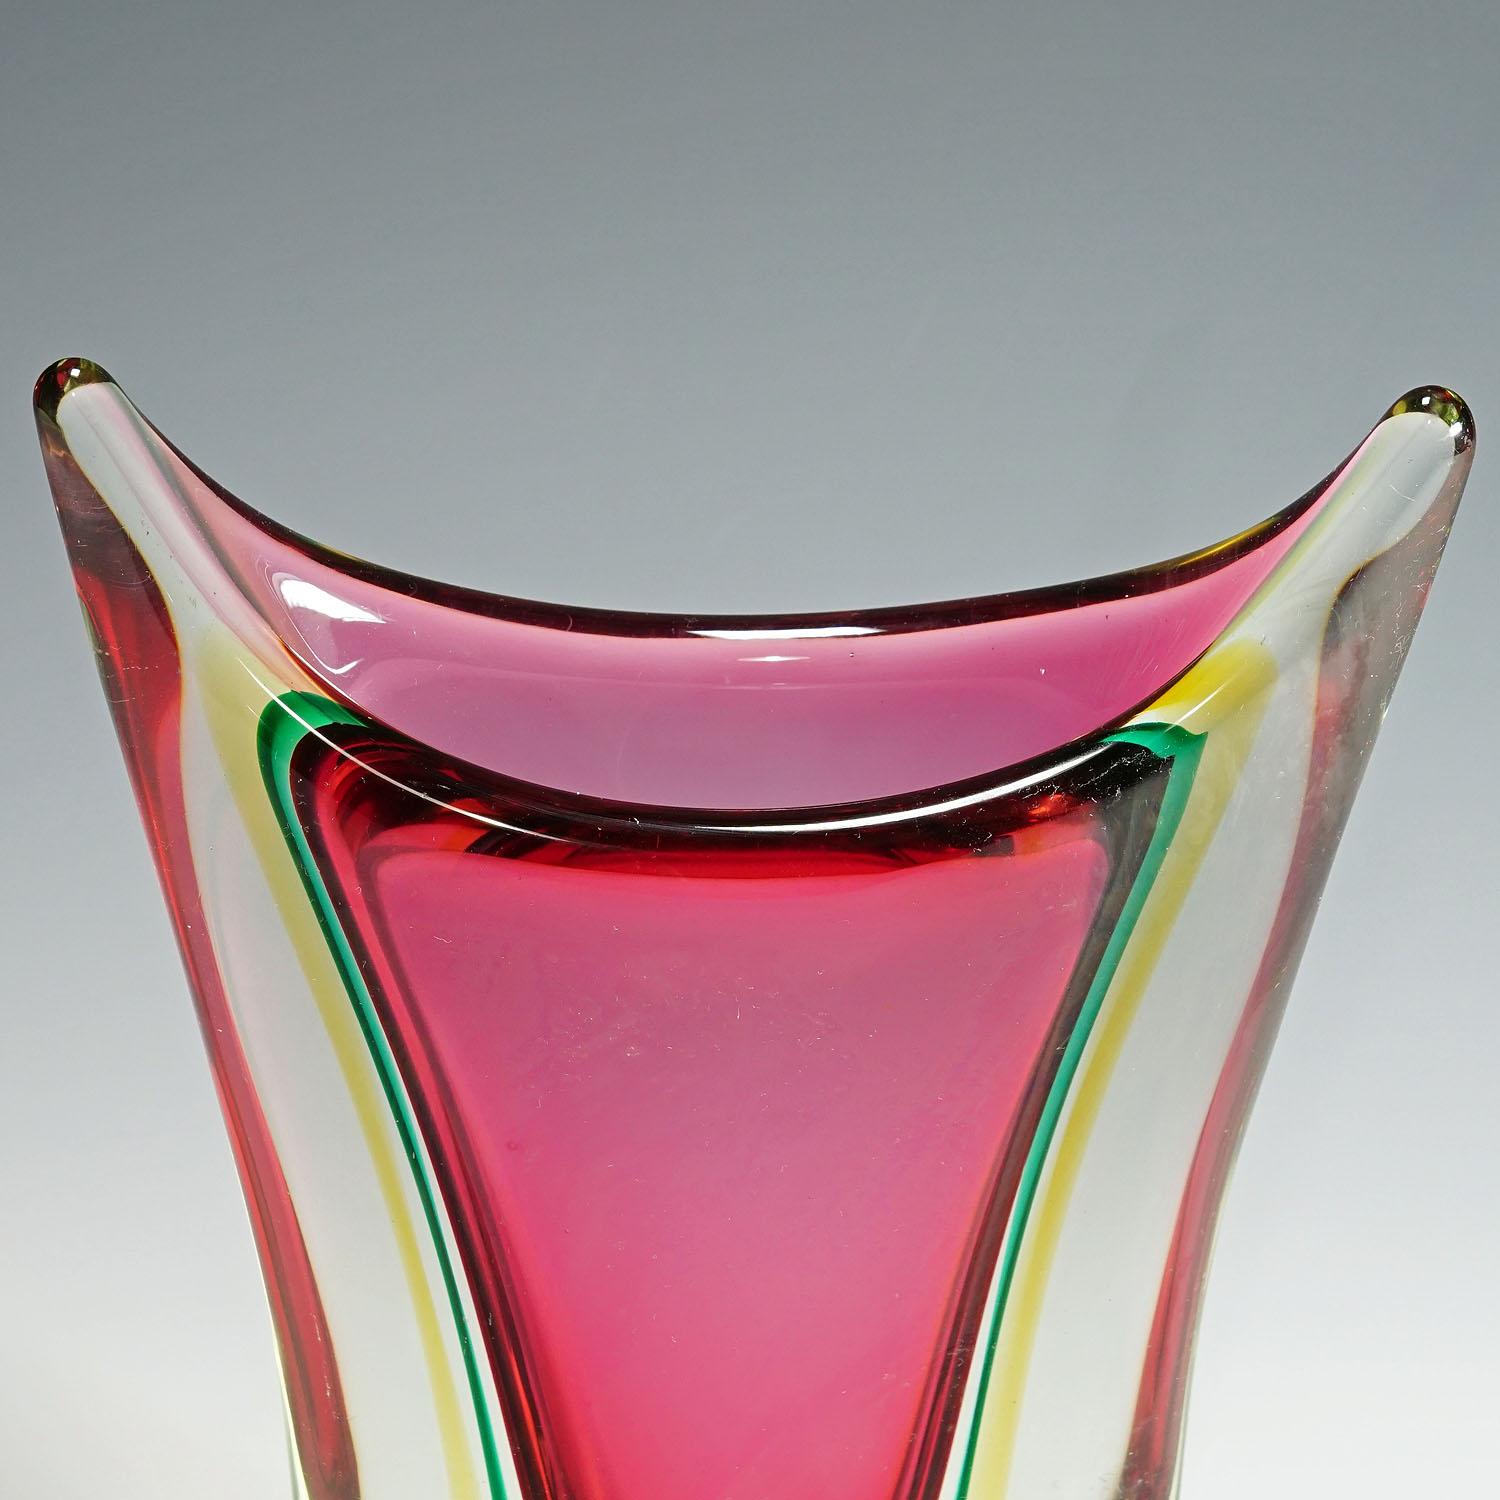 Italian Midcentury Murano Sommerso Art Glass Vase by C.O.V.E.M, 1960s For Sale